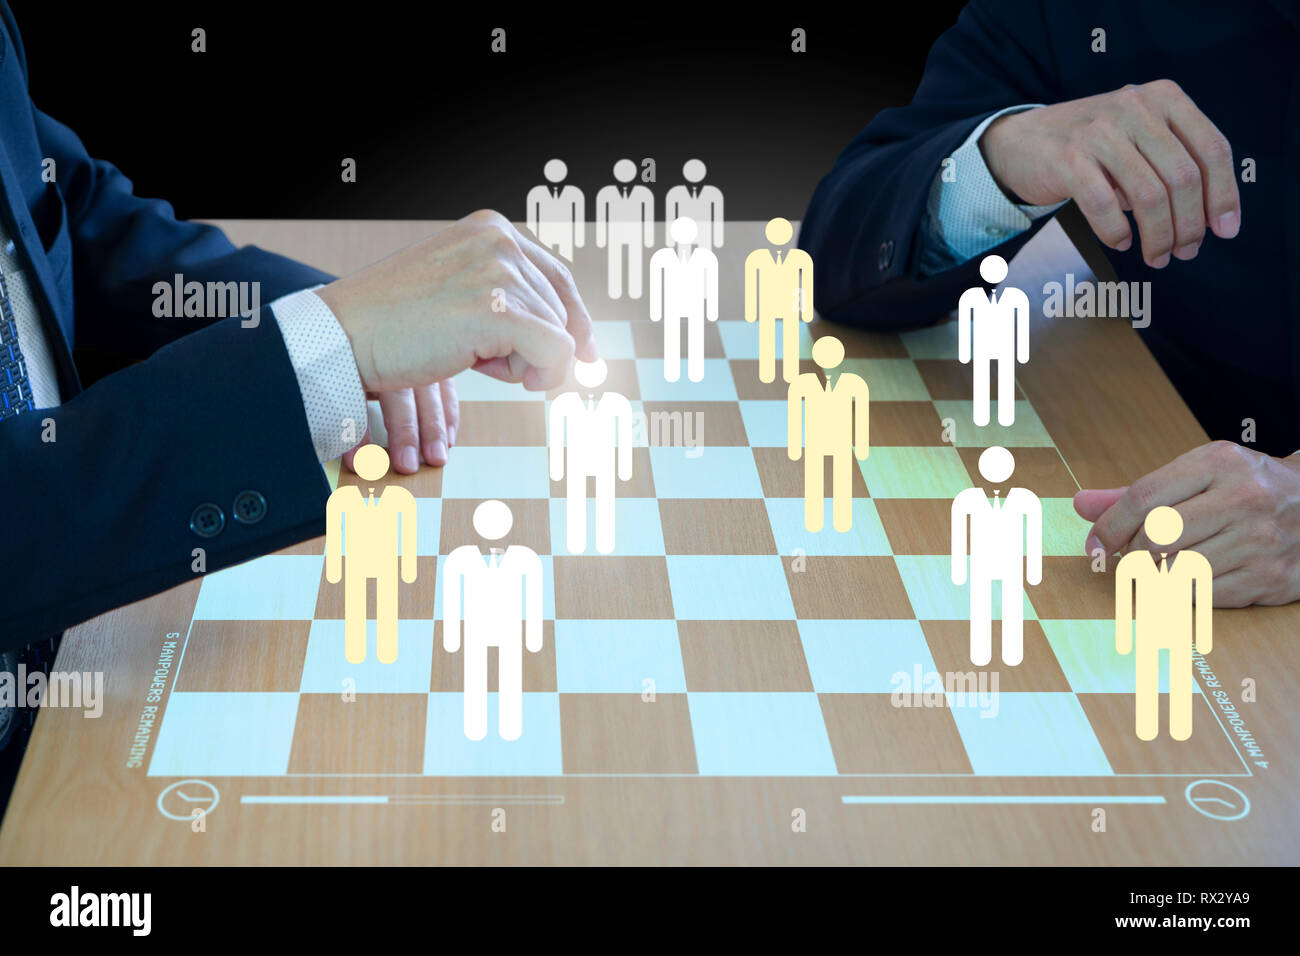 Drei business Administratoren spielen Checkers oder Entwürfe auf einer hölzernen virtuelle Schachbrettmuster oder draftboard im Konzept der Personal- oder Human Resource. Stockfoto